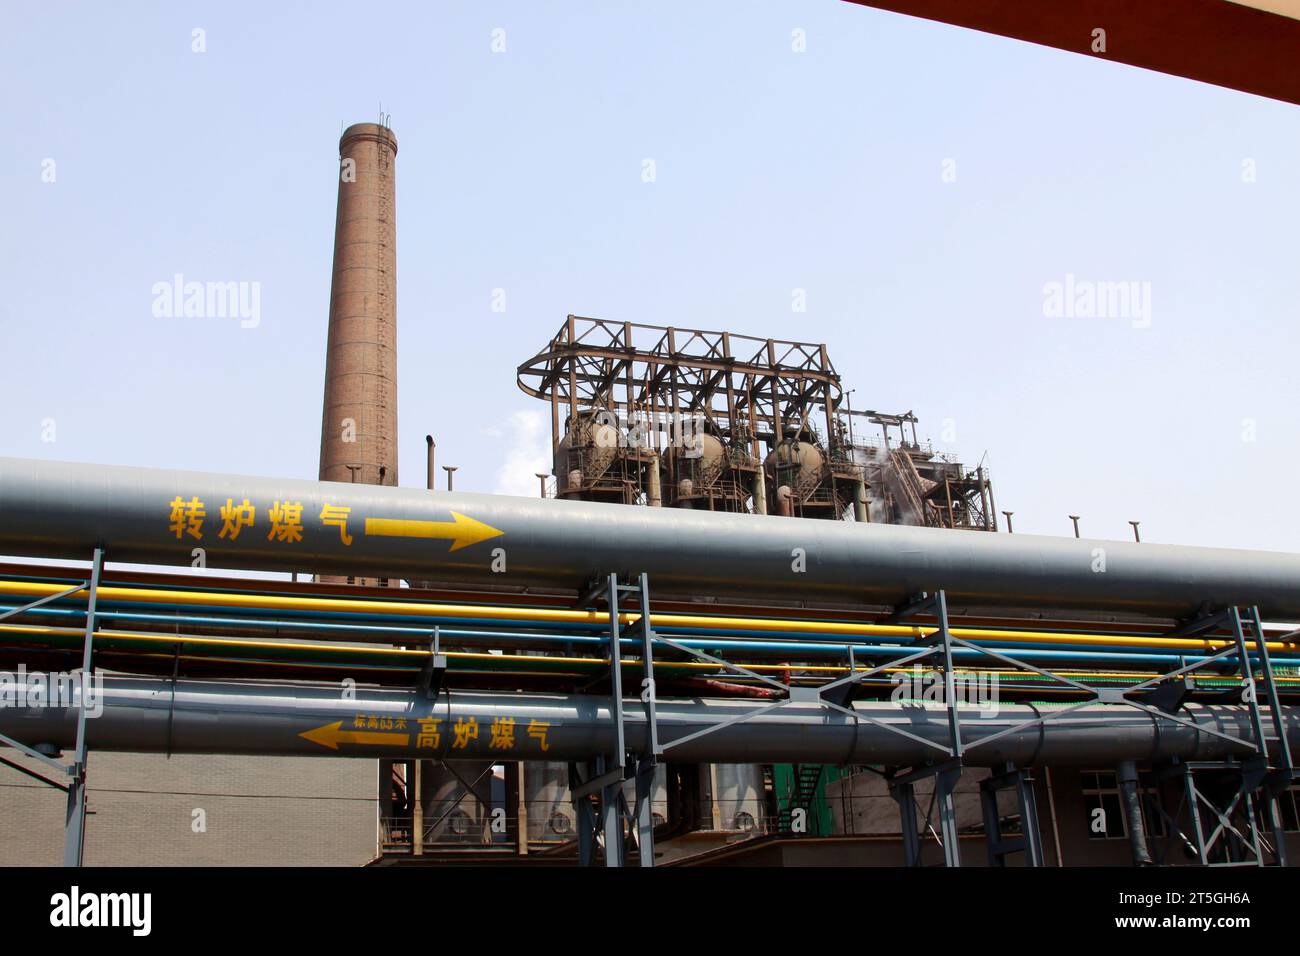 LUANNAN - 4 MAGGIO: Parola "gas di carbone" scritta nel libro del gasdotto, in uno stabilimento di produzione, il 4 maggio 2014, nella contea di Luannan, provincia di hebei, chi Foto Stock